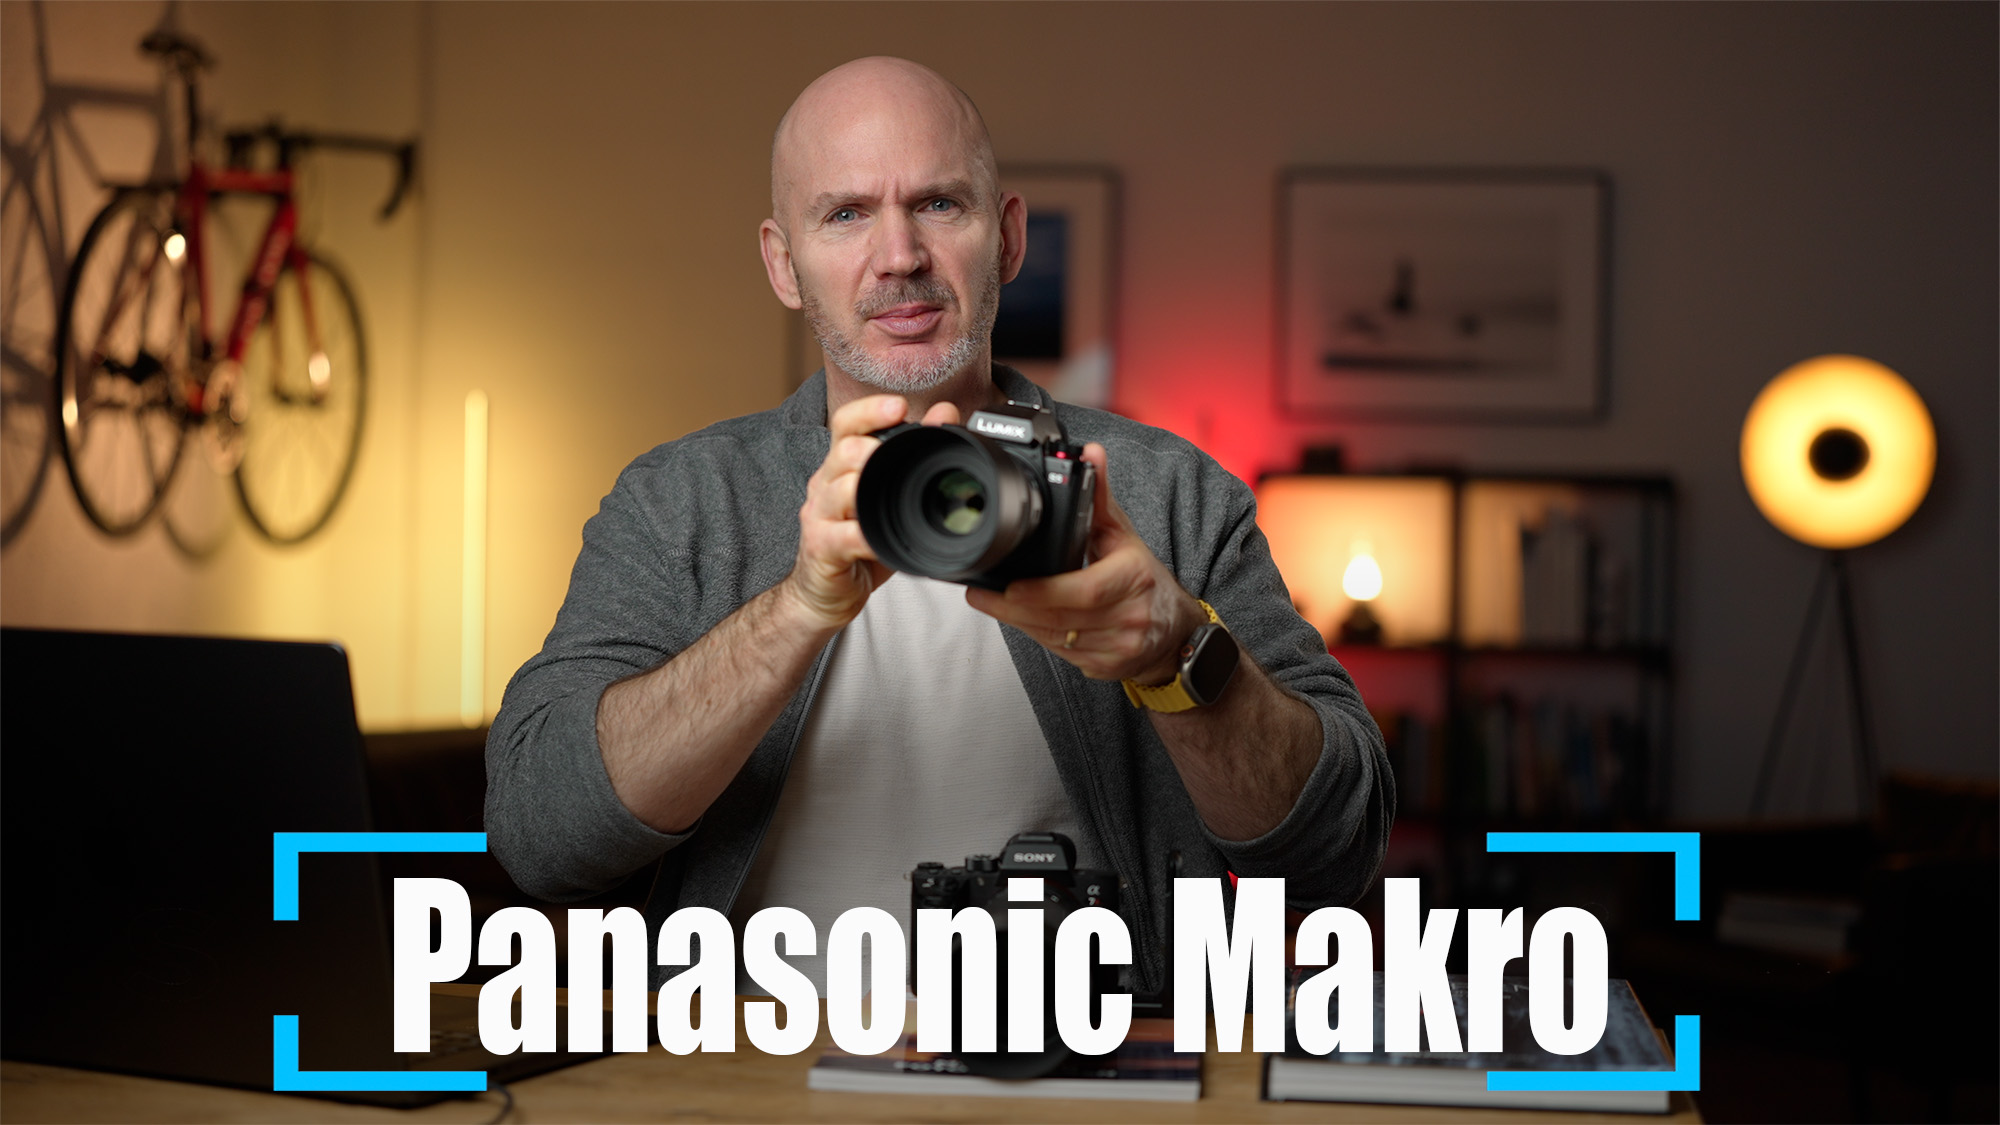 Das 100mm Makro Objektiv von Panasonic für L-Mount ist auffällig klein und leicht. Dazu kommt ein guter Autofokus. Aber wie sieht es mit Vignette und Schärfe aus? Das zeigt Stephan Wiesner im Video.